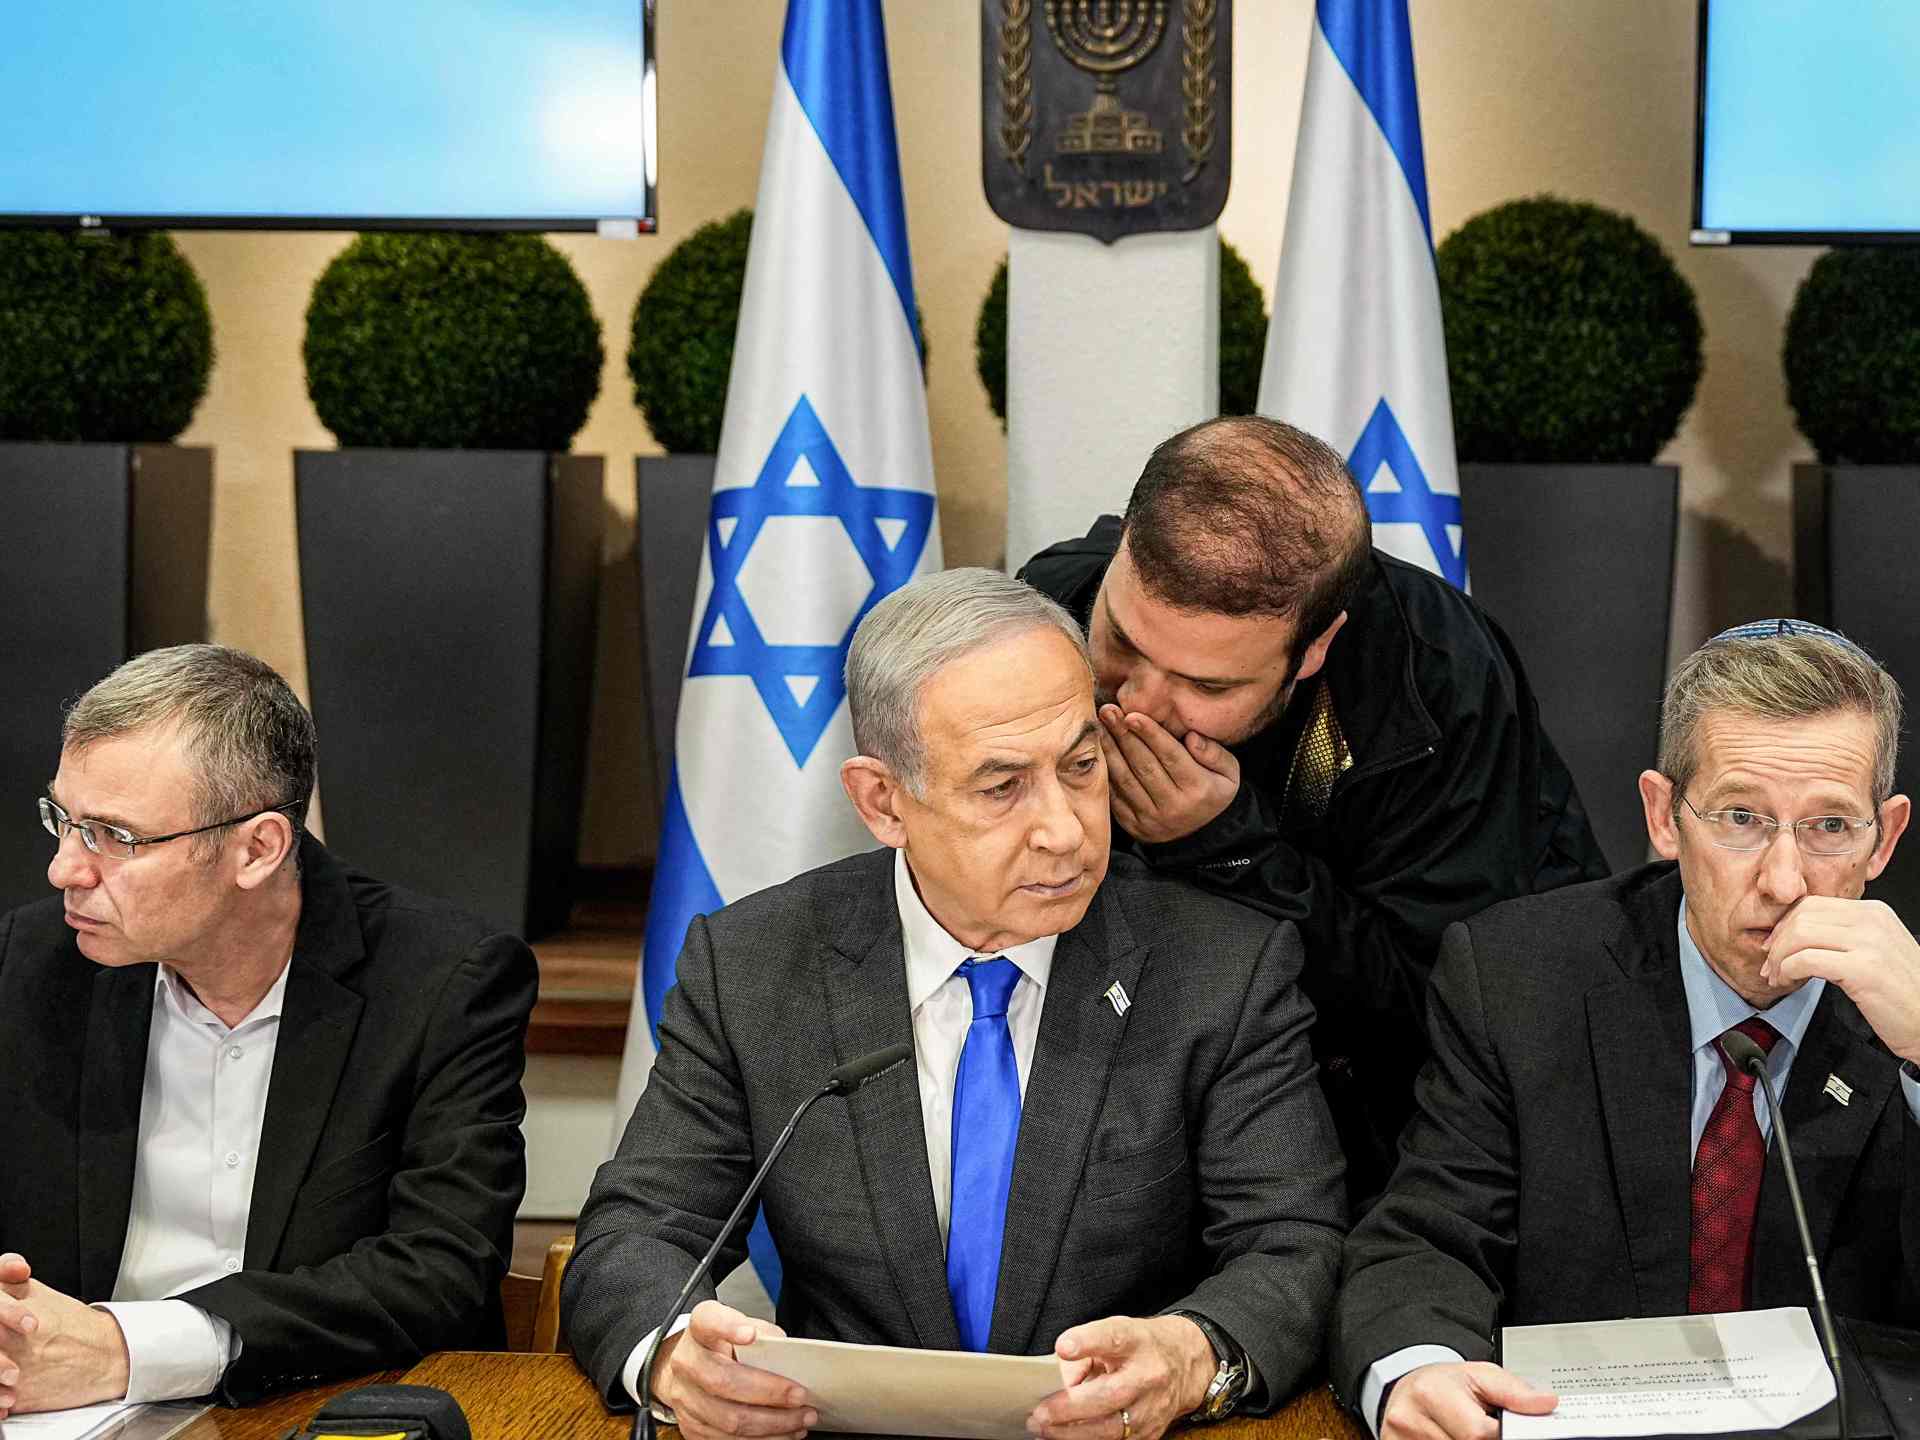 نتنياهو يوجه وزراءه بعدم التعليق على اغتيال العاروري وتوقع إسرائيلي بـ”رد انتقامي” | أخبار – البوكس نيوز